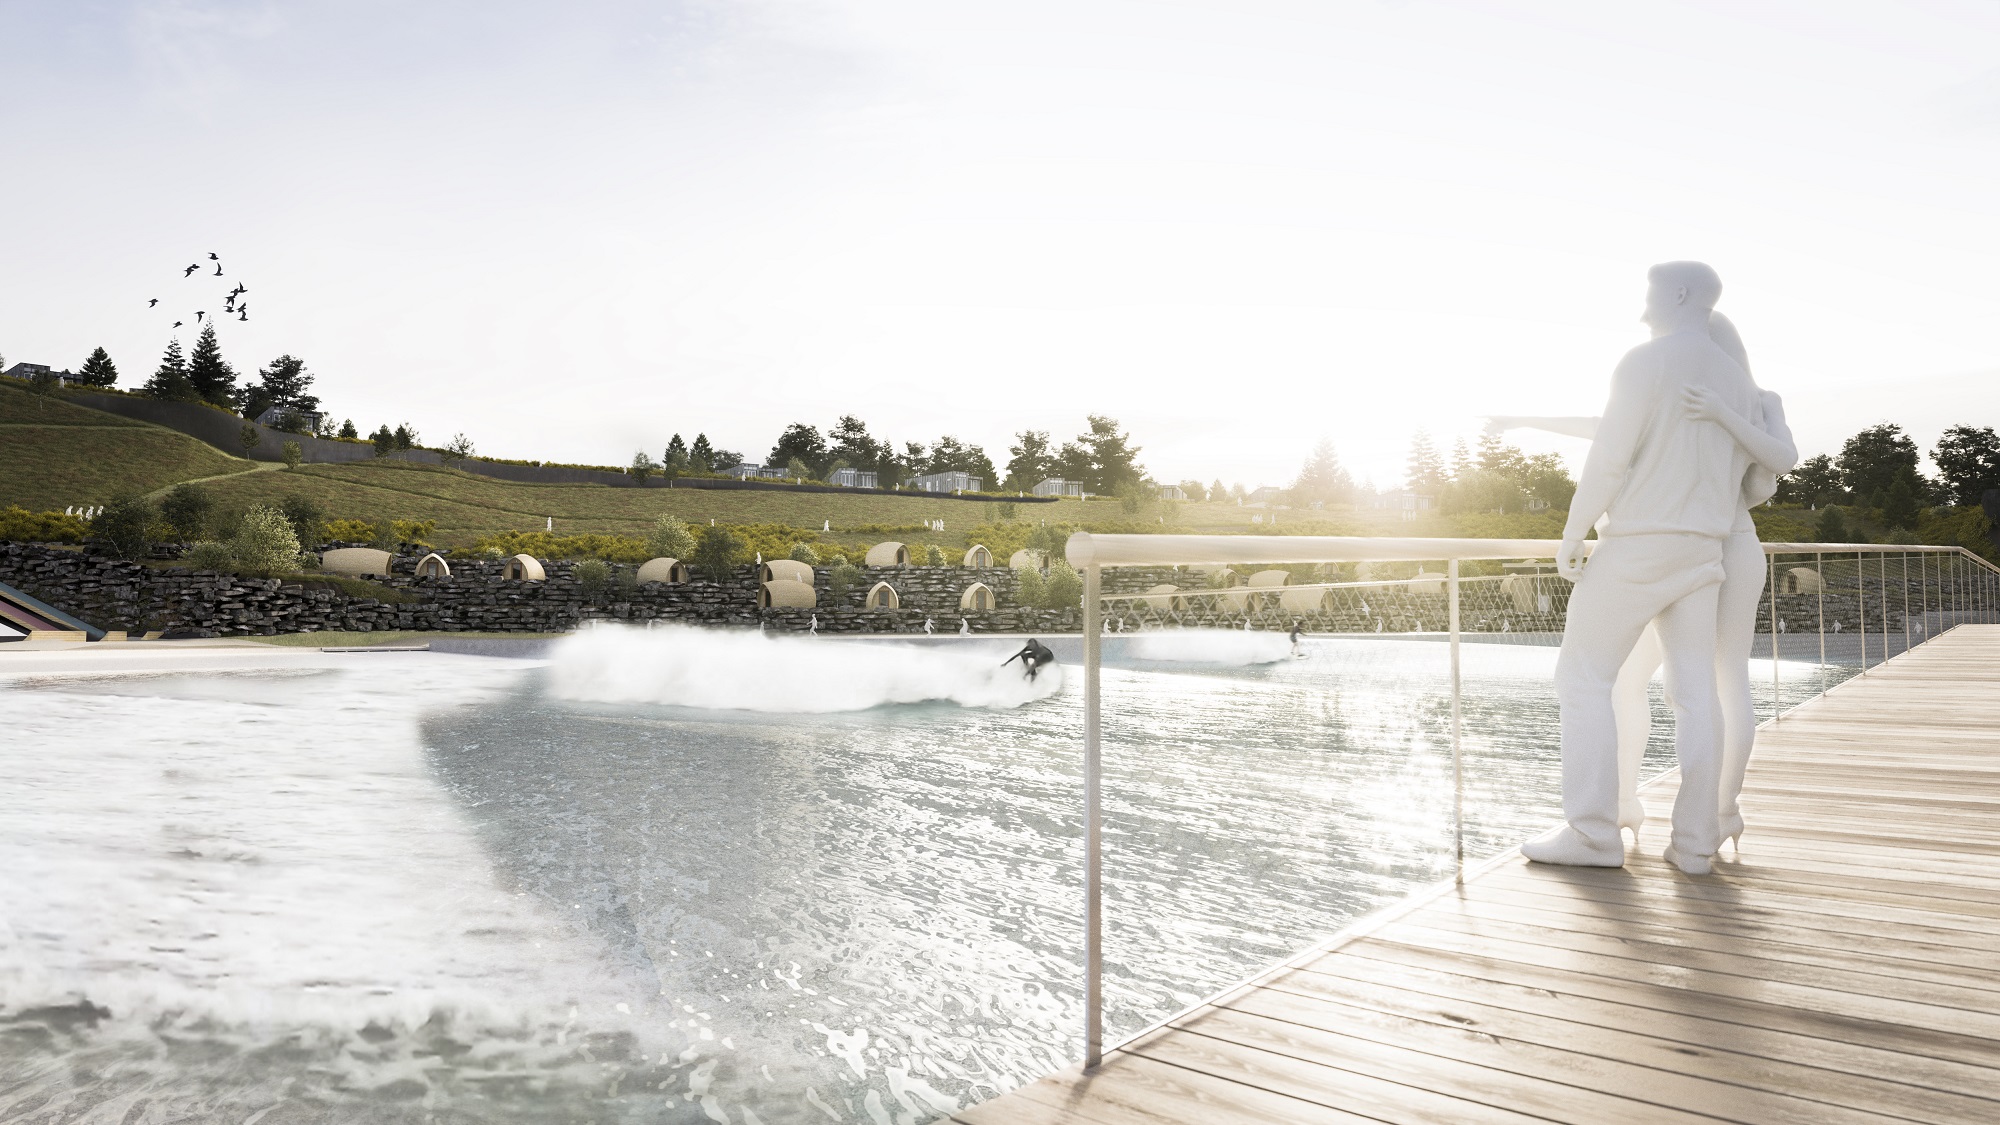 Edinburgh officially approves ‘world-class’ artificial surf park